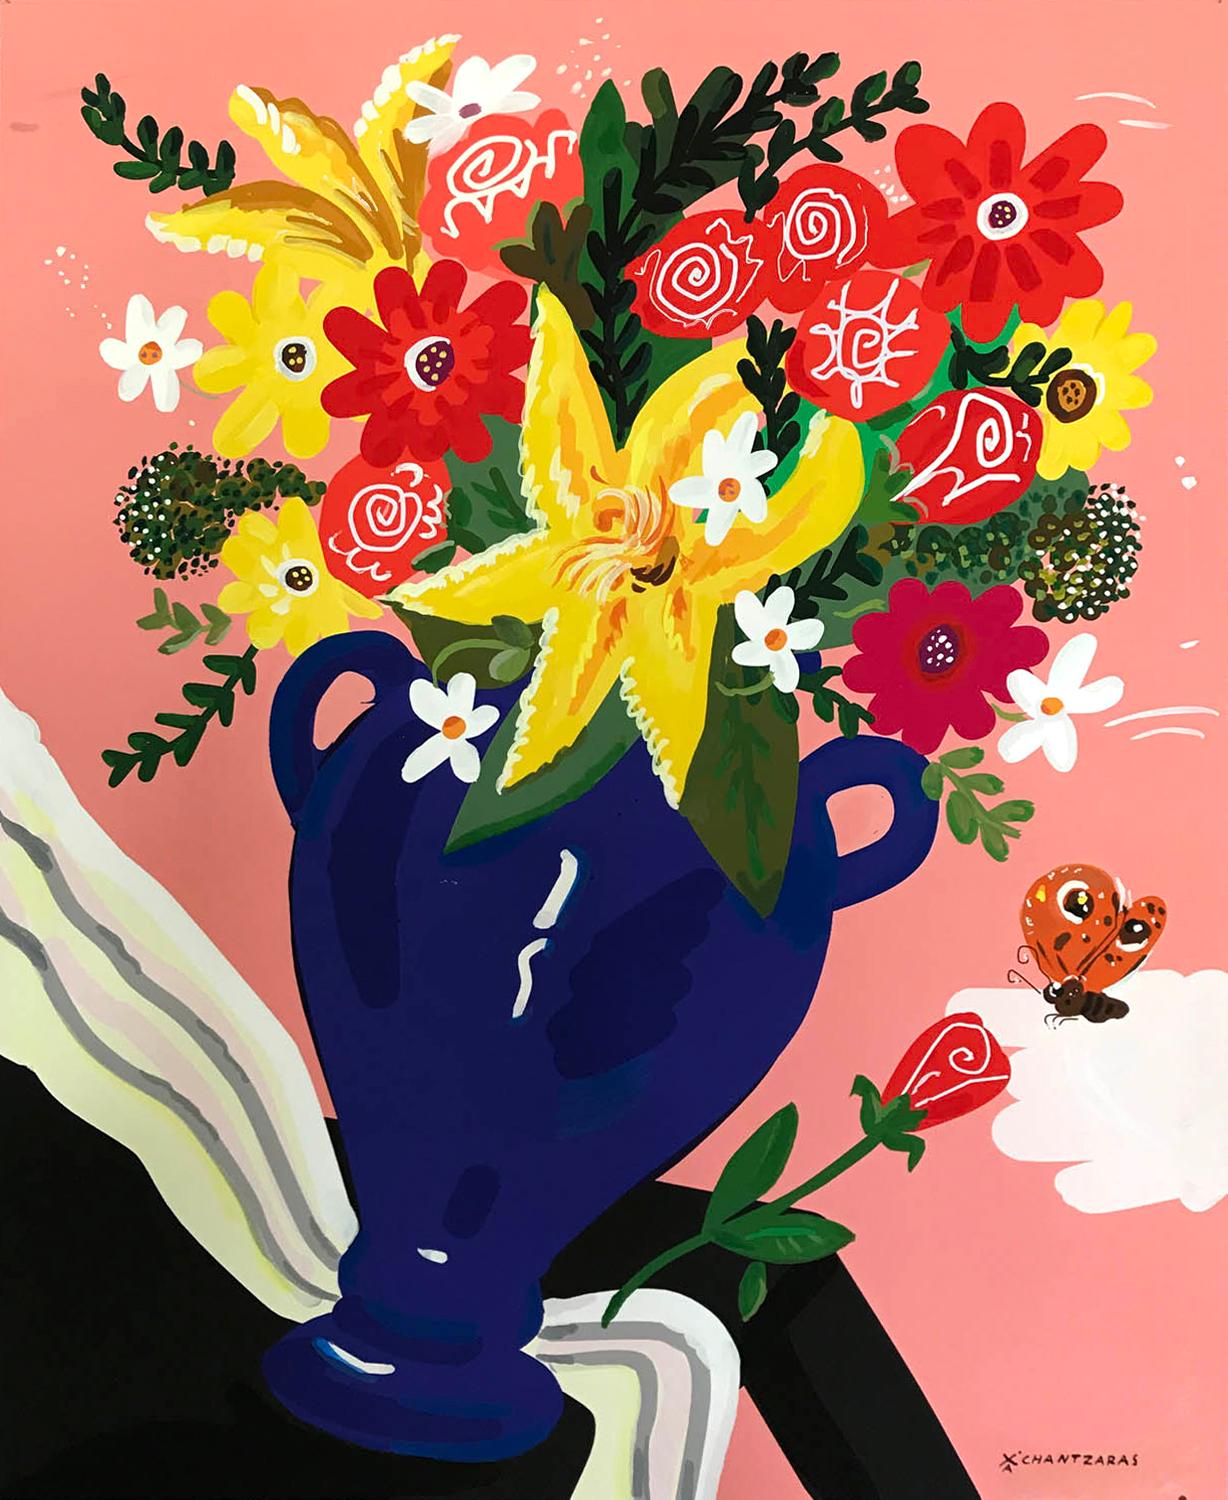 Still-Life Painting Apostolos Chantzaras - « papillon social », fleurs colorées de style Pop art, fond rose, cadre blanc